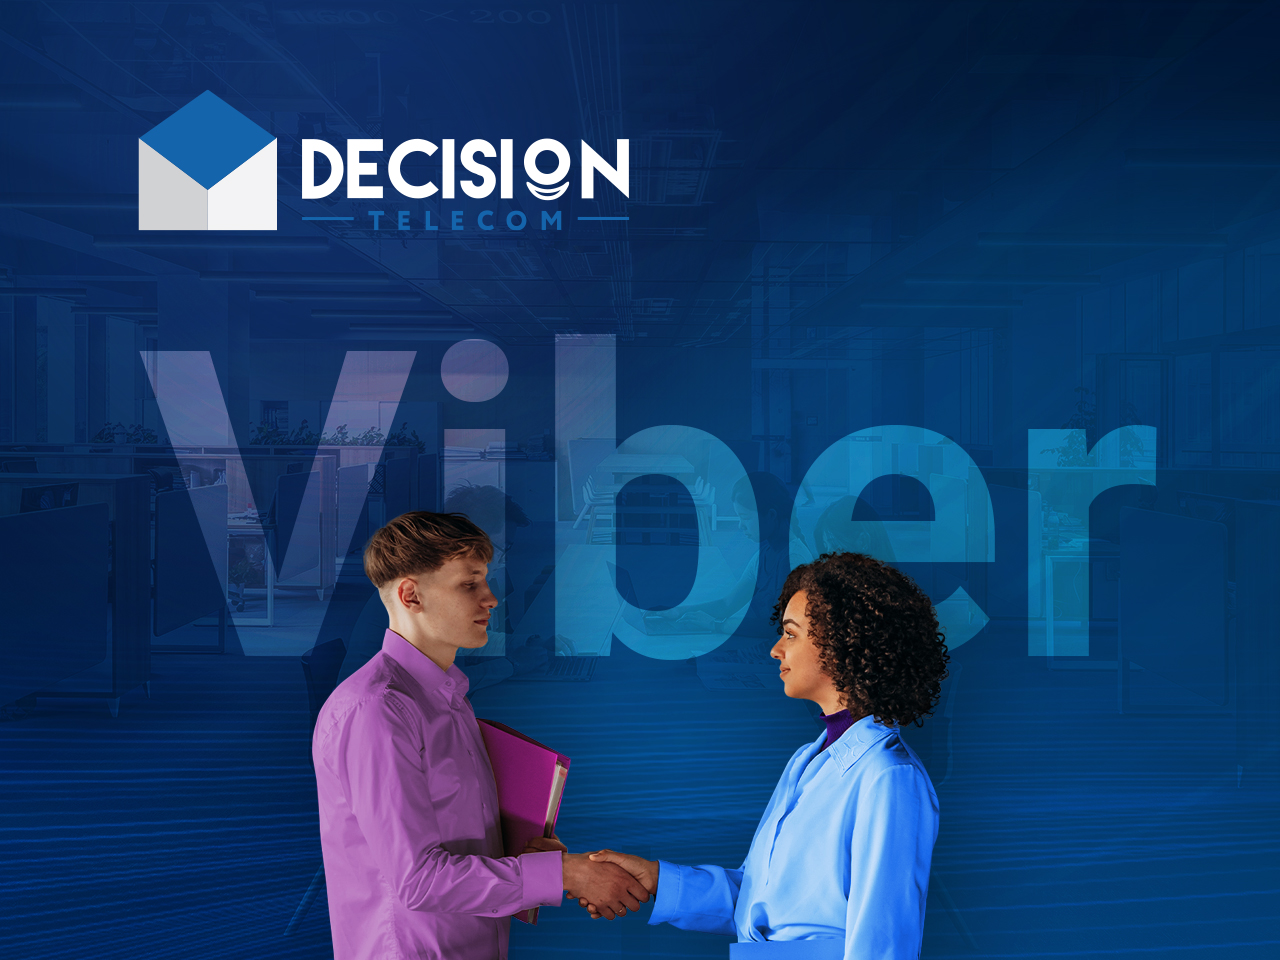 Отличные новости! Decision Telecom — официальный бизнес-партнер Viber